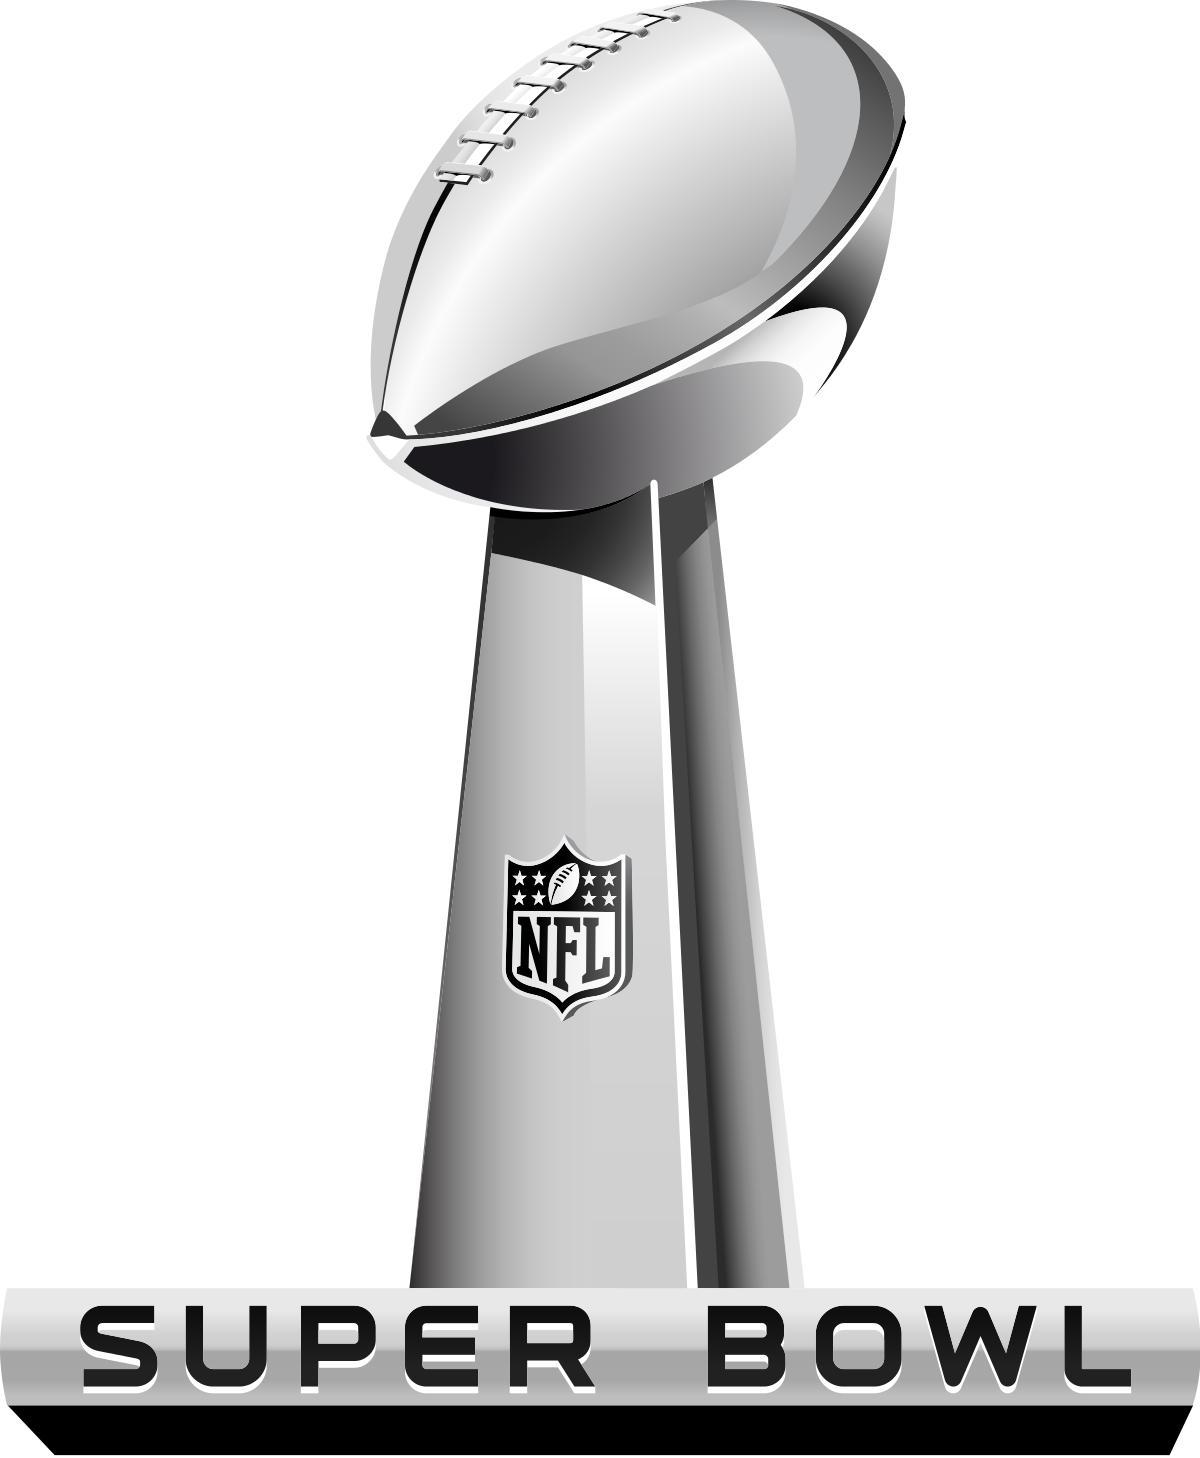 NFL Super Bowl LV or Super Bowl 55 Logo Line Art Illustration